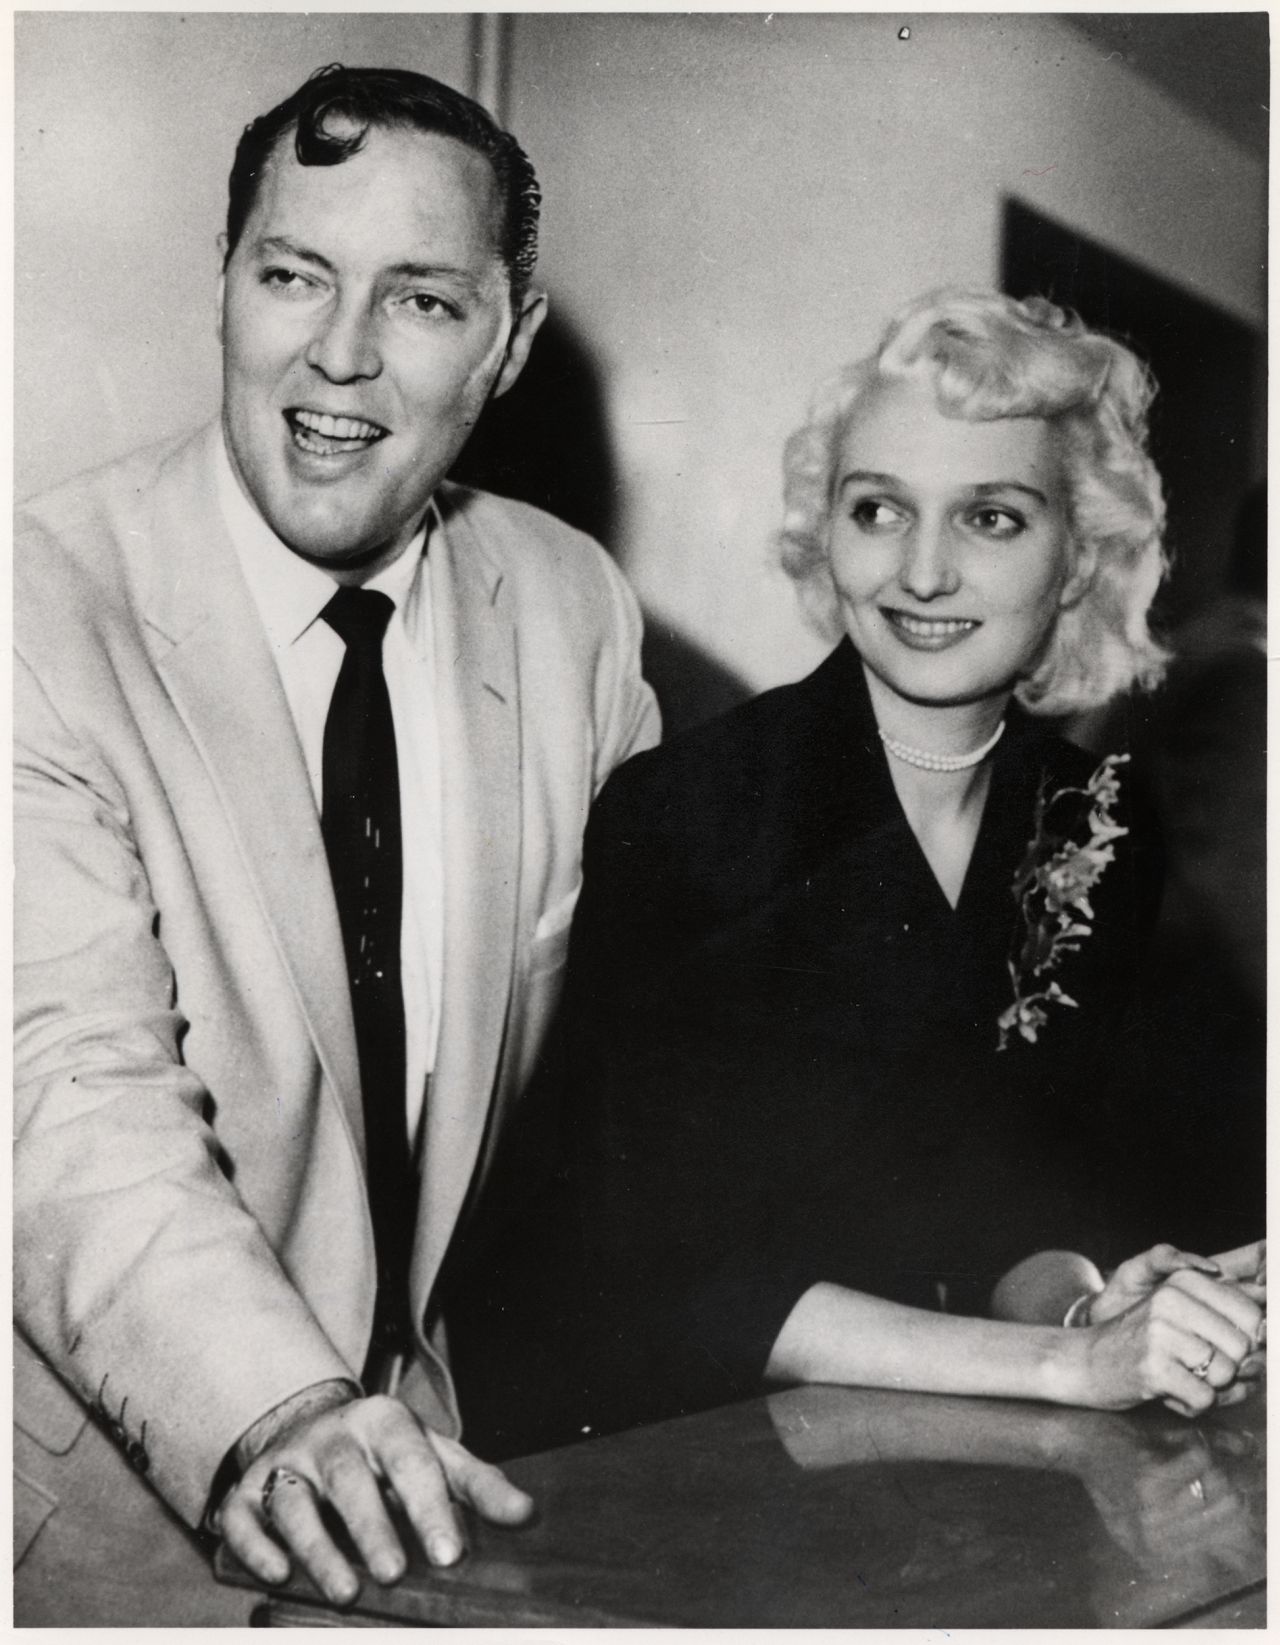 Rocklegende Bill Haley mit seiner Frau im Savoy-Hotel nach dem stürmischen Empfang durch jugendliche Fans in London, 1957.